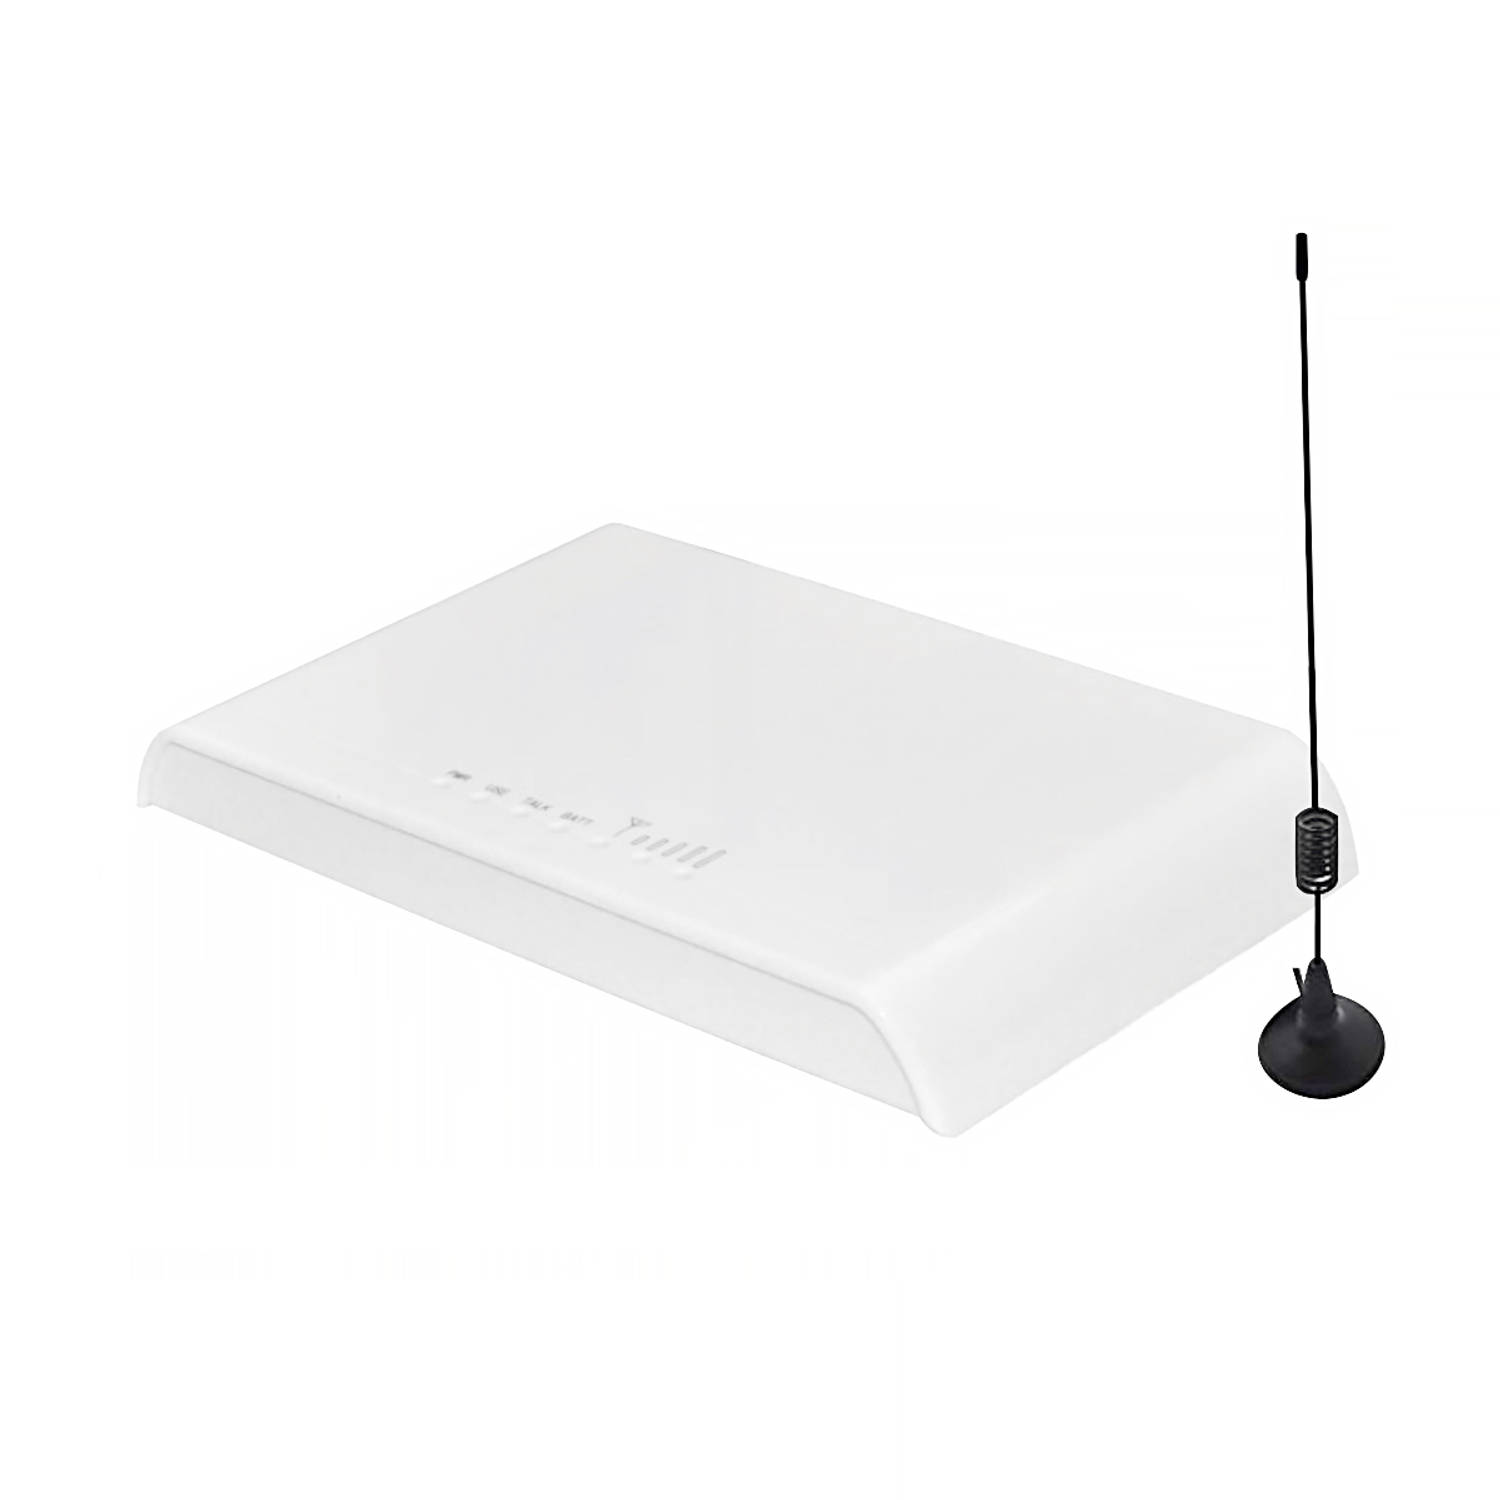 Horend Goed - EasySaver 8848GW 4G VoLTE Wit Wit - Vast bellen zonder vaste telefoonaansluiting